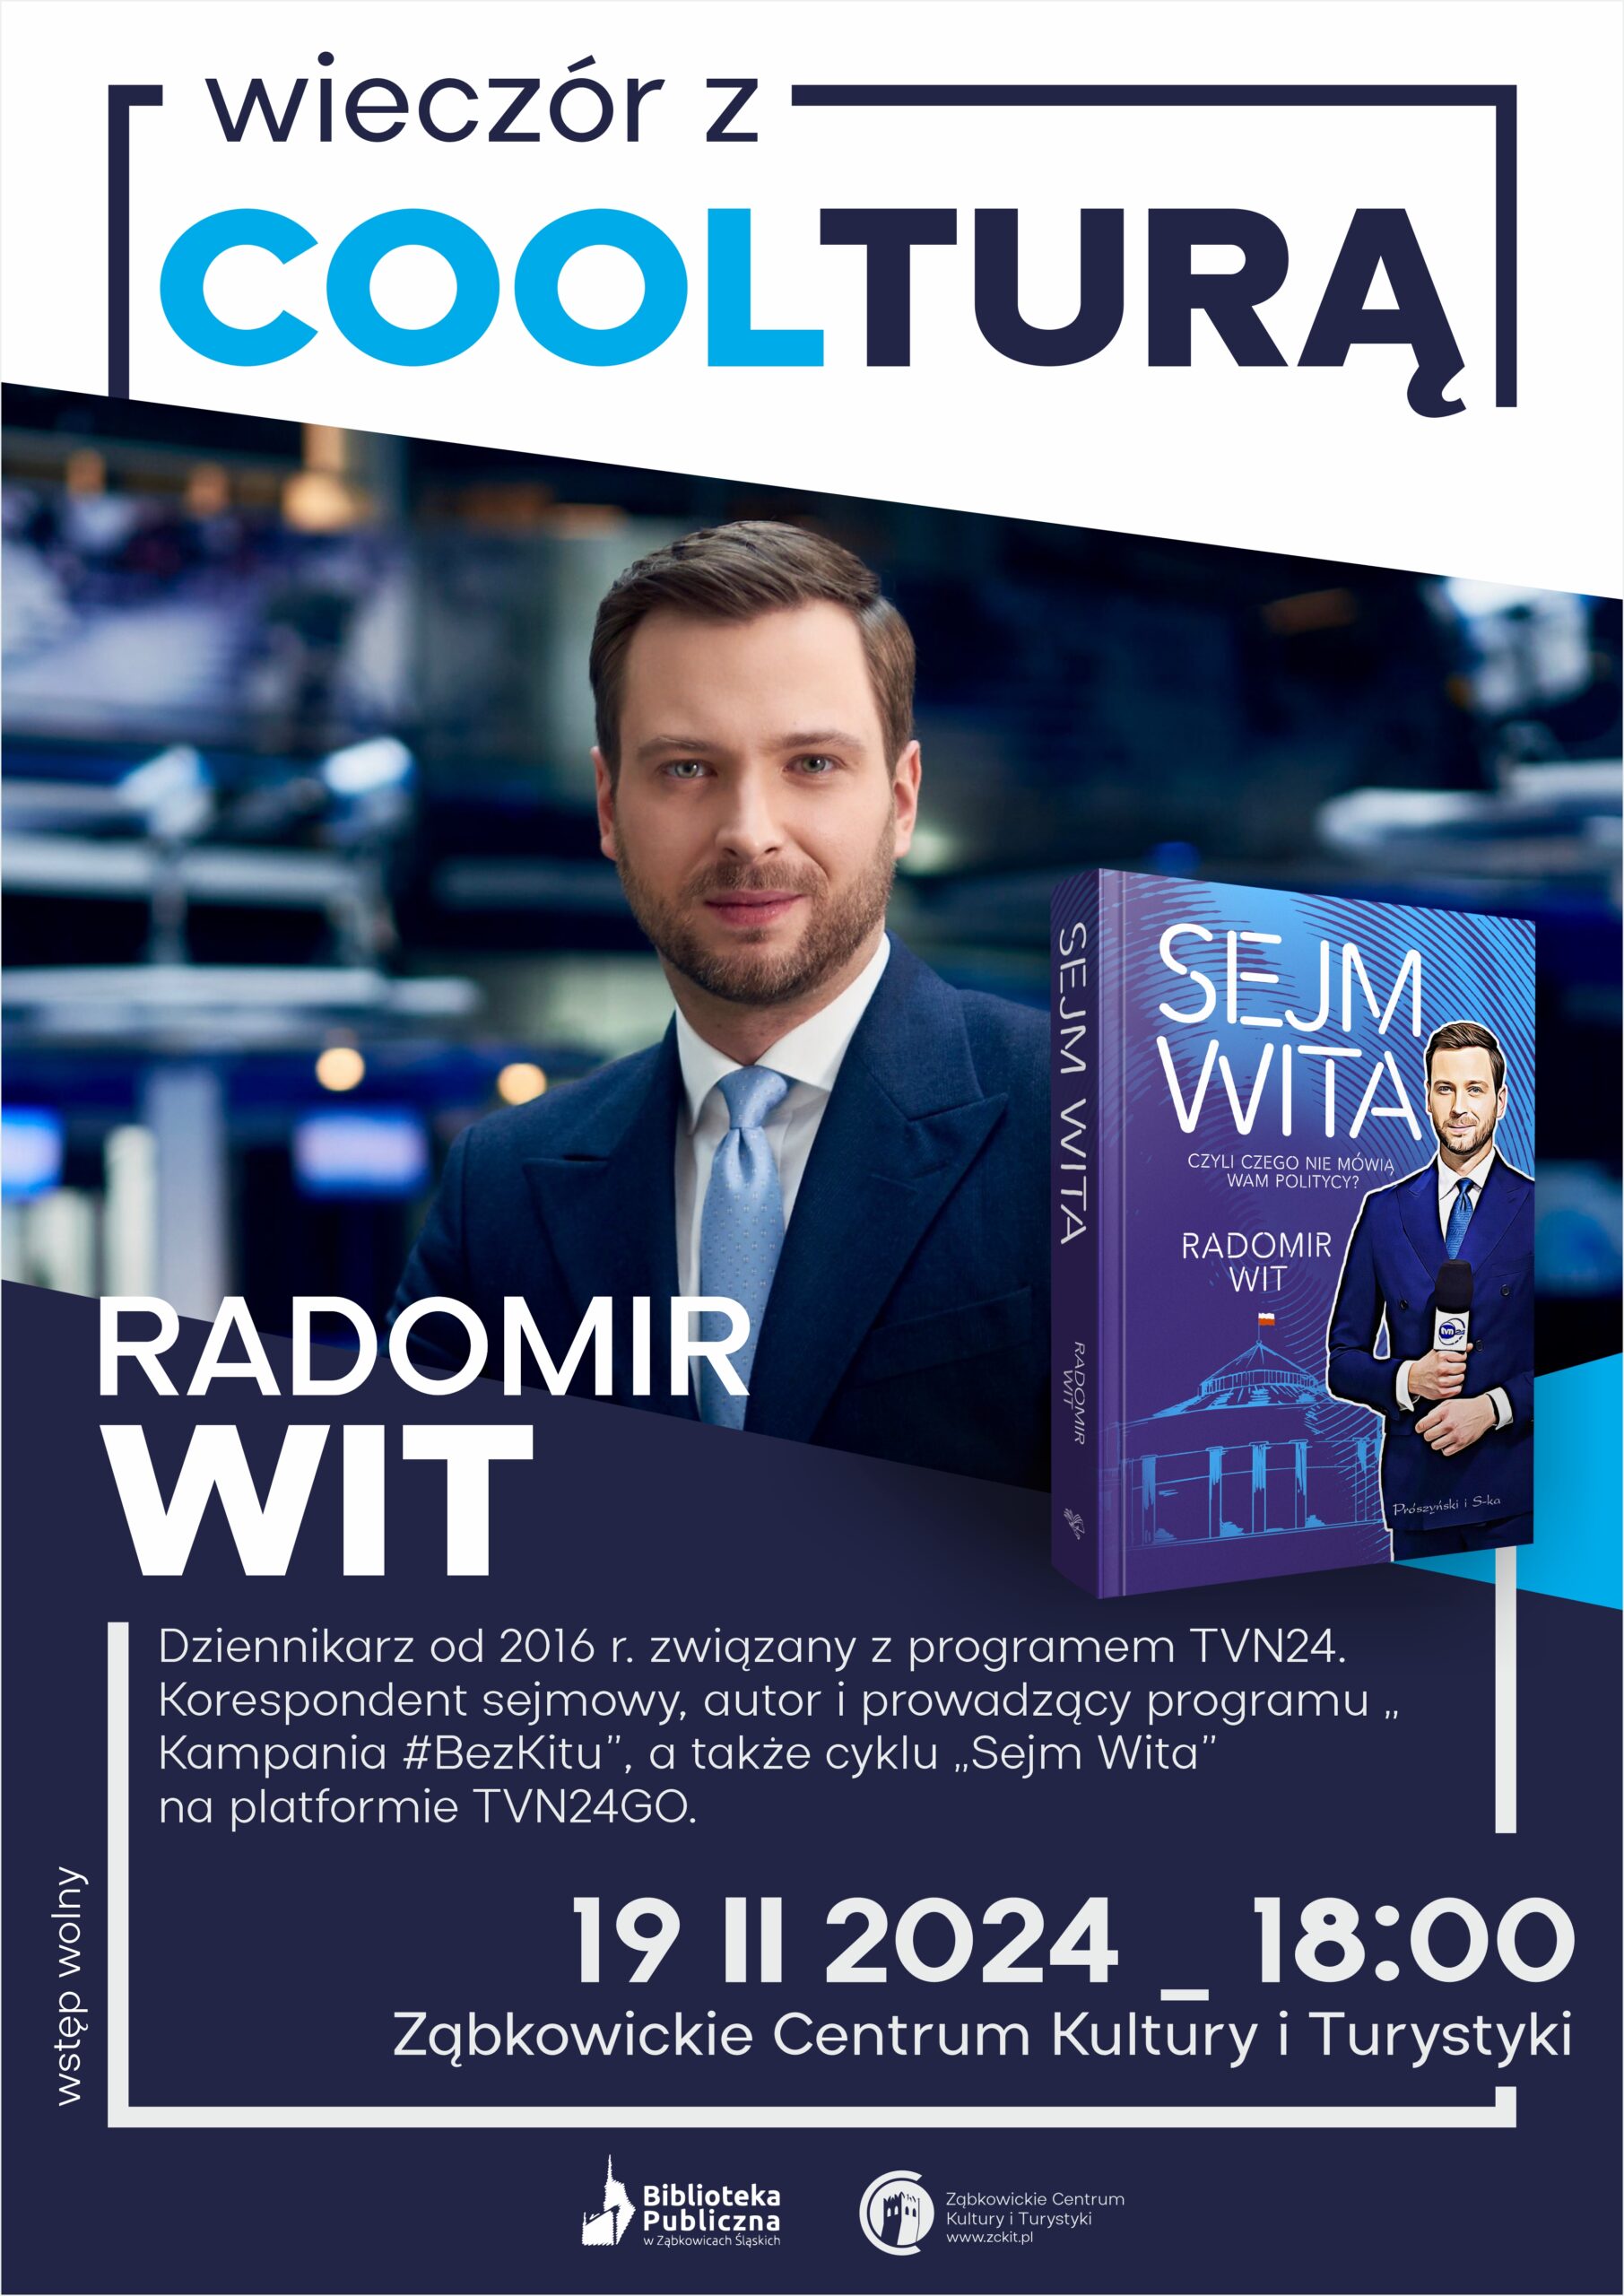 Plakat informacyjny "Wieczór z Coolturą" z Radosławem Witem 19 lutego 2024 o godzinie 18:00 w ZCKiT.